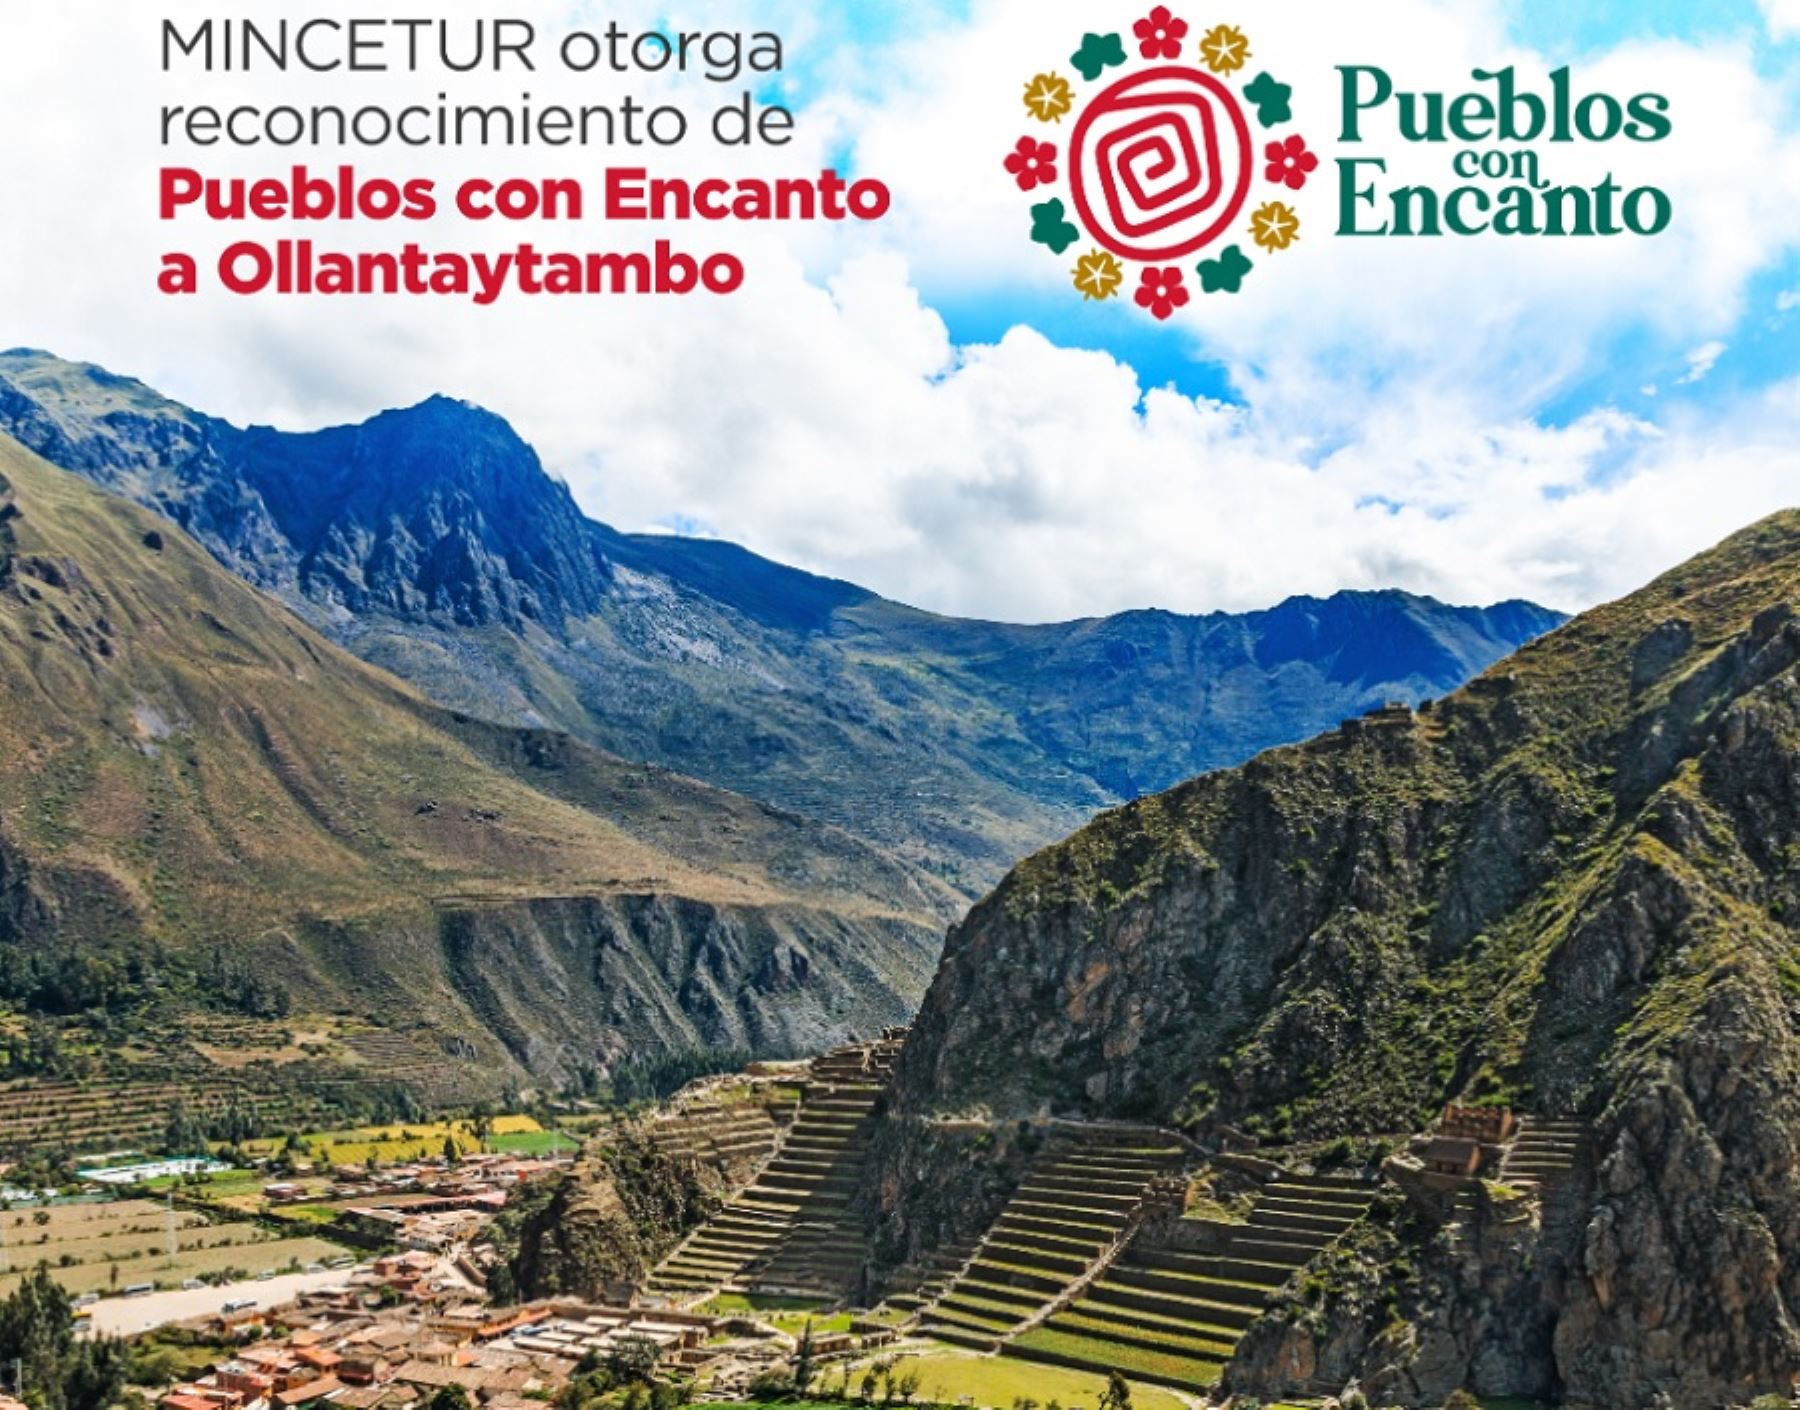 Ministerio de Comercio Exterior y Turismo (Mincetur) otorgó al distrito de Ollantaytambo la distinción del primer “Pueblo con encanto”, como un reconocimiento a sus singulares atractivos naturales y culturales.